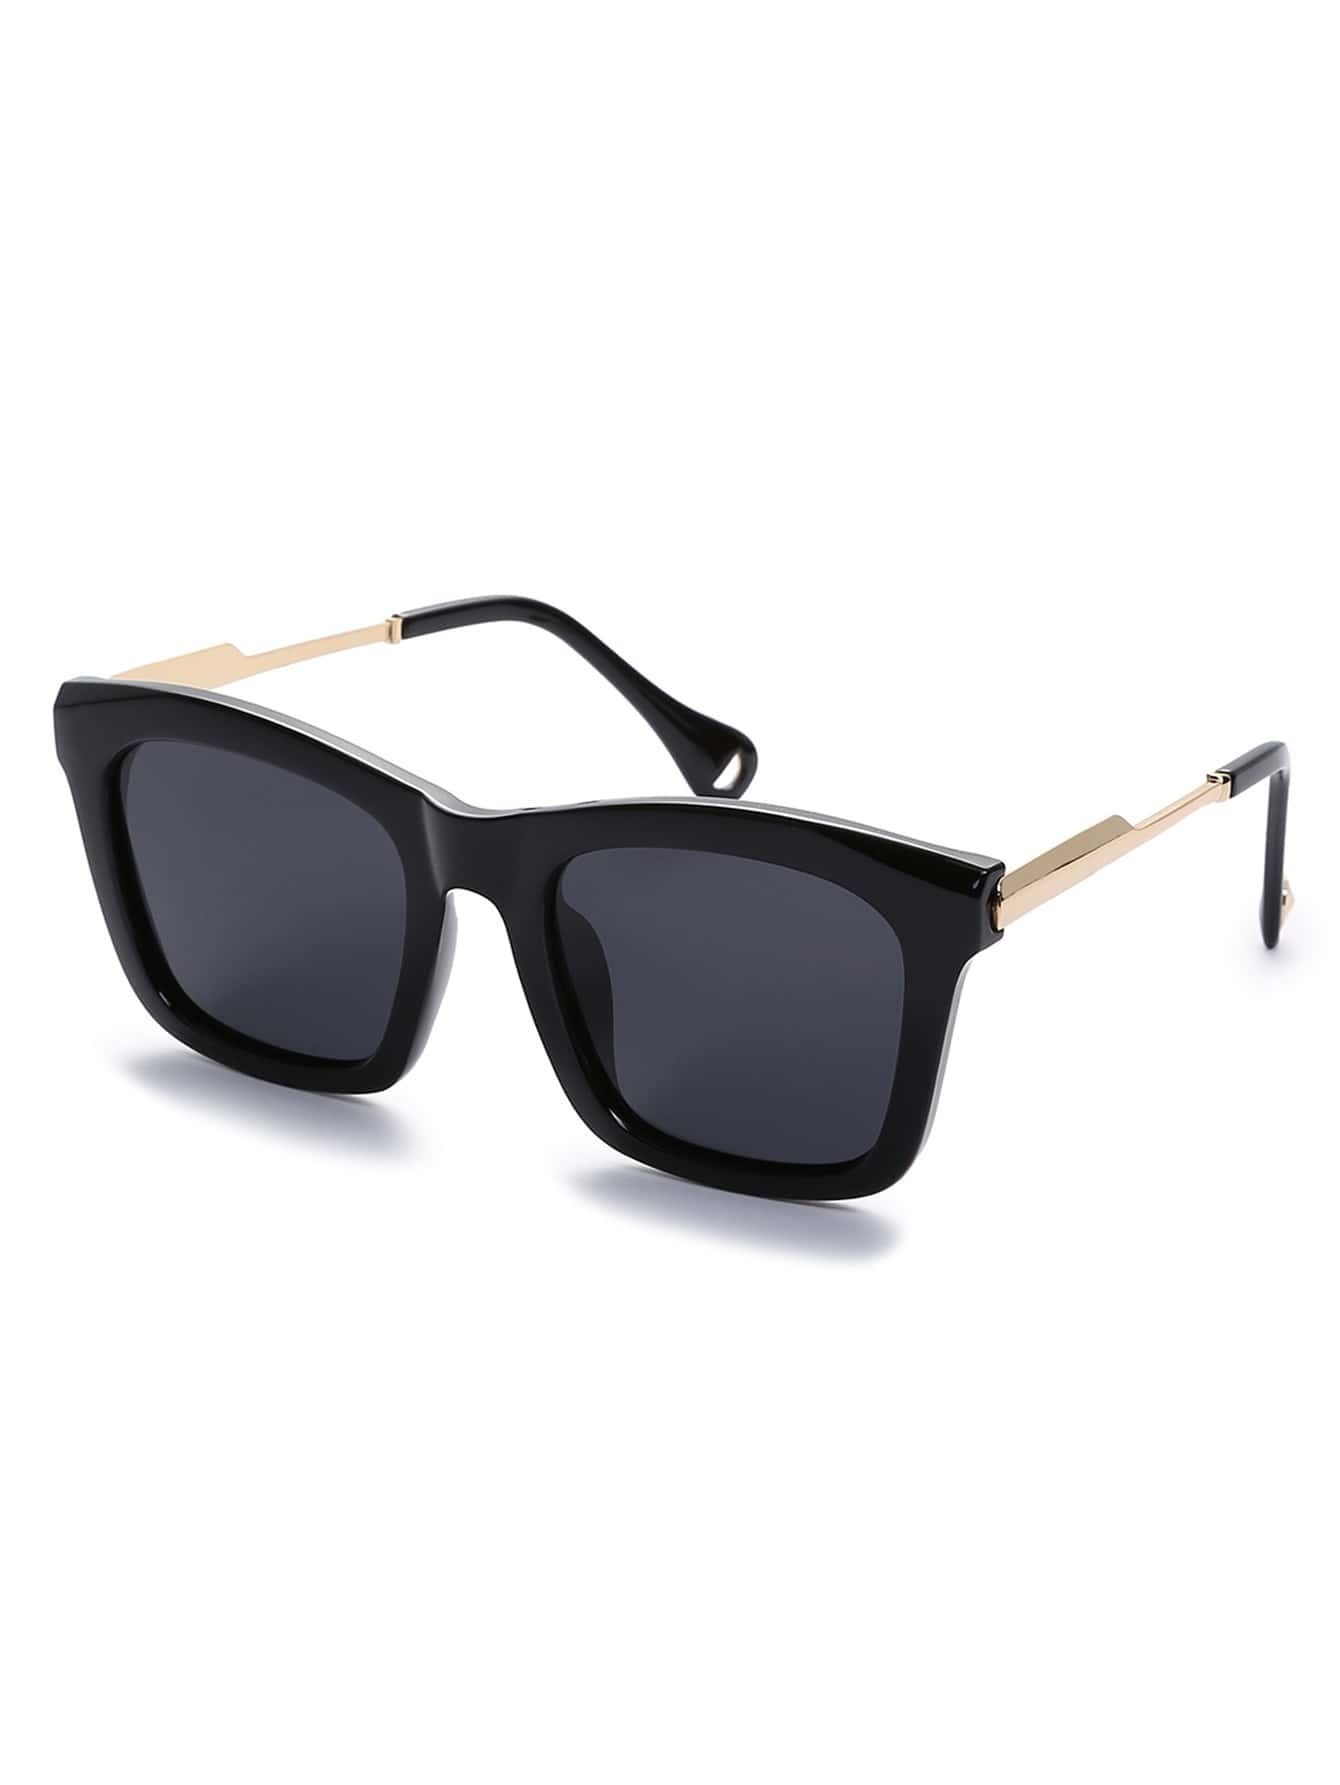 Black Retro Reflective Square Sunglasses | SHEIN